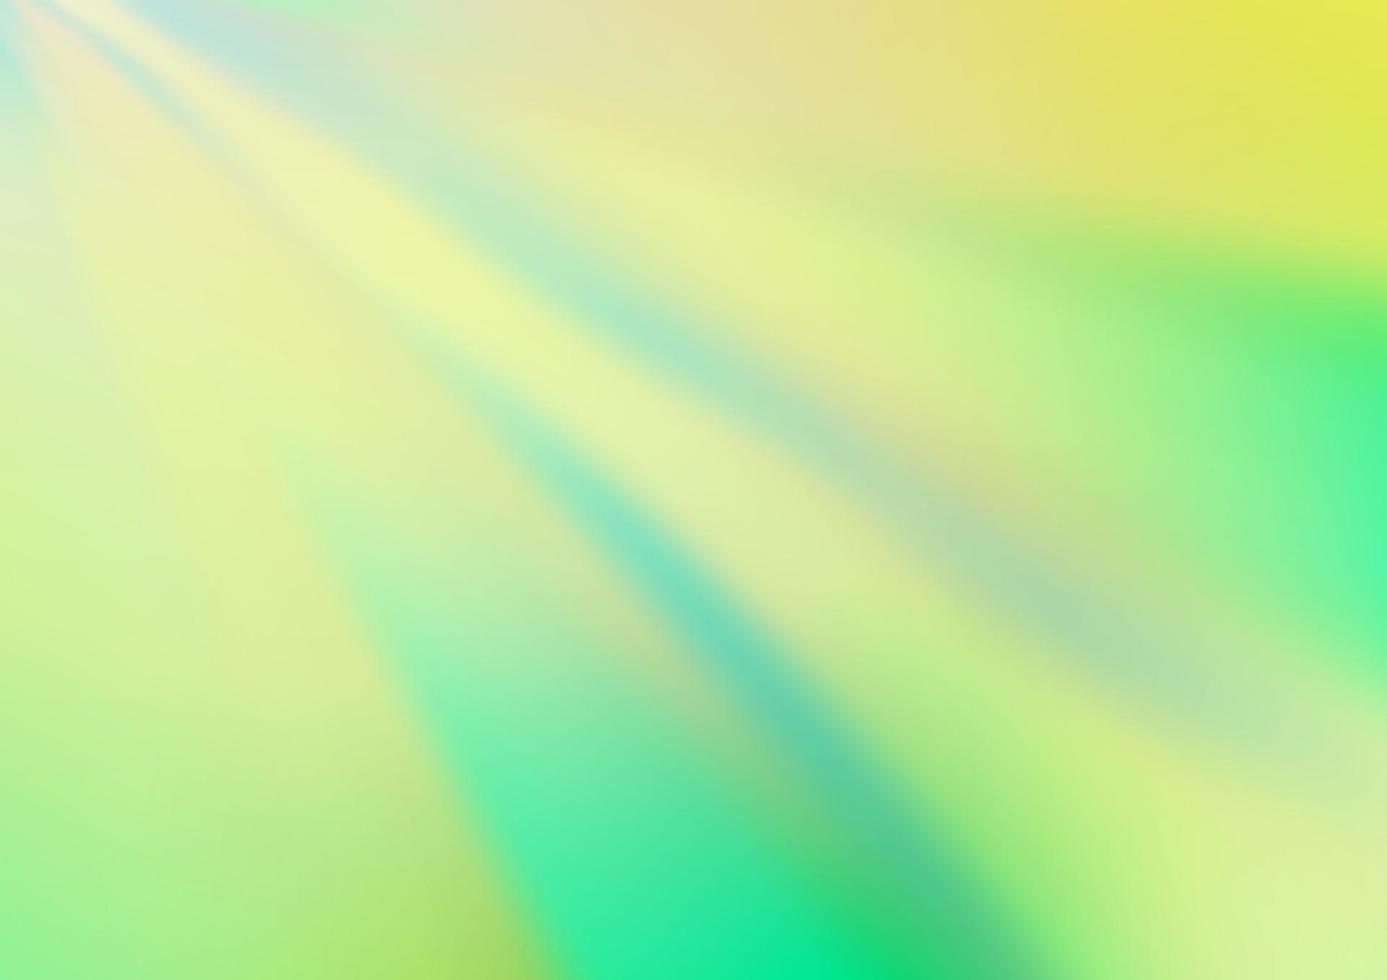 ljusgrön, gul vektor abstrakt suddig mall.